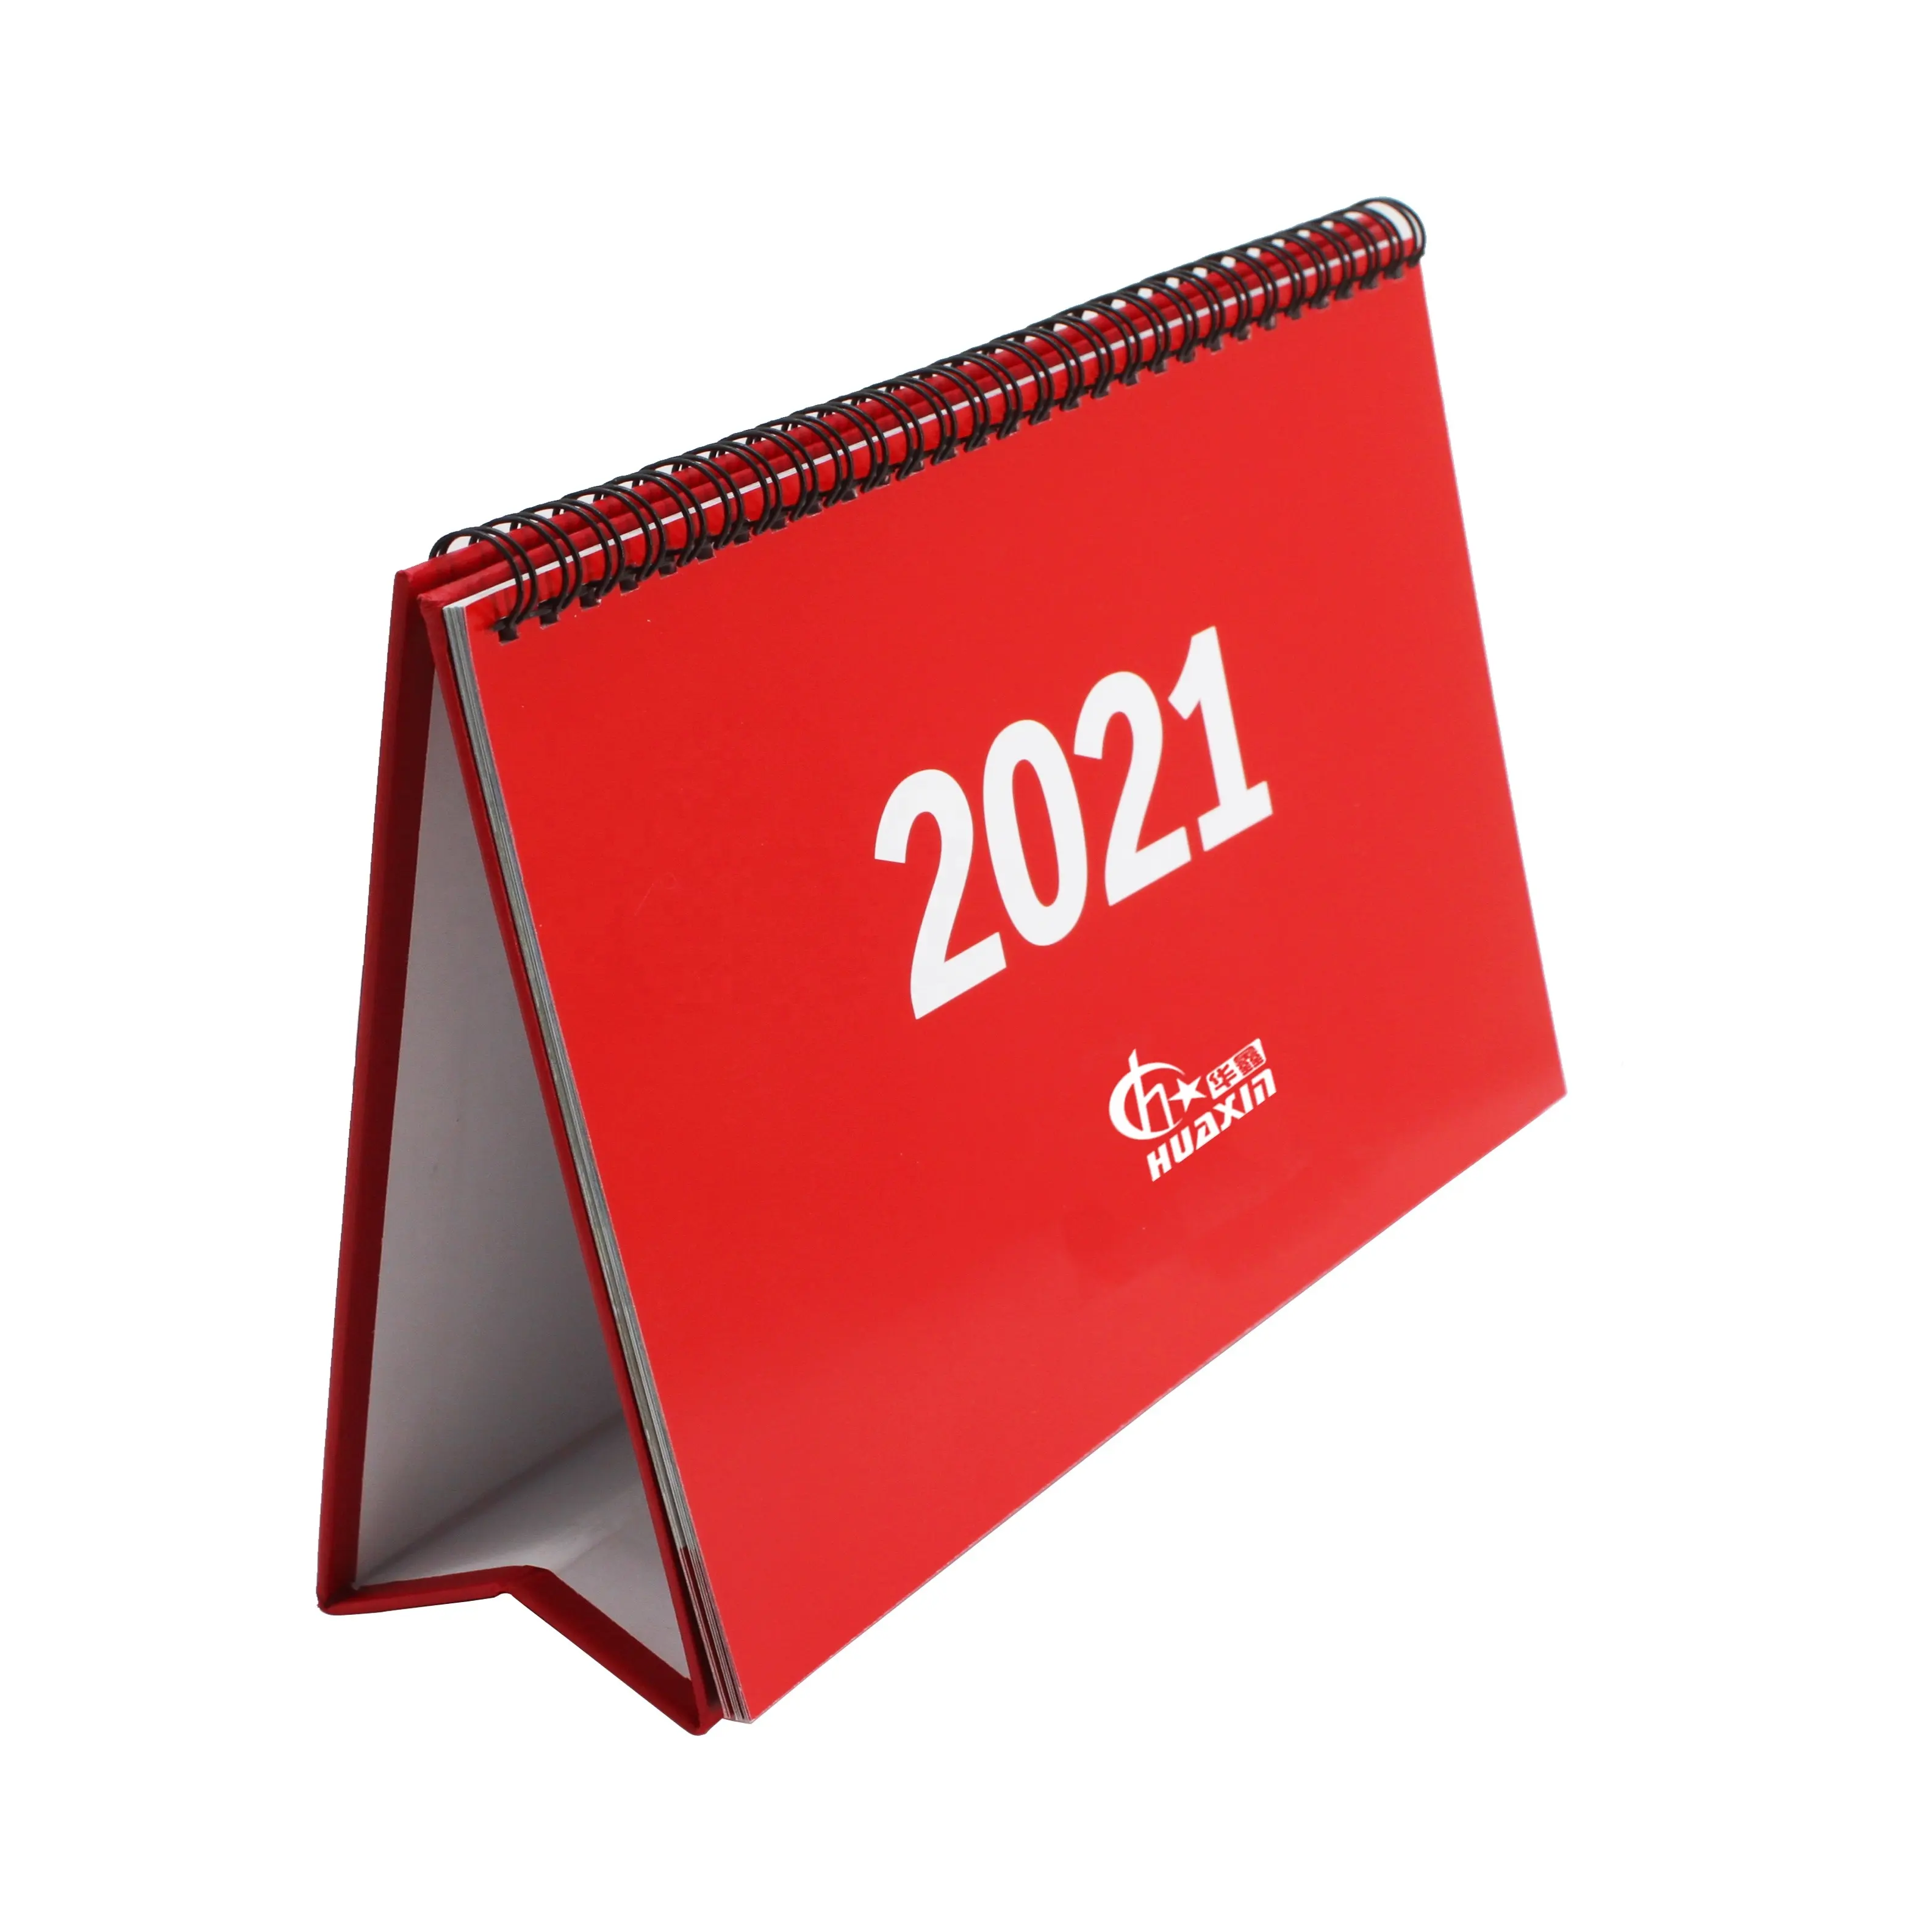 2022 novo design personalizado impressão folding permanente calendário de mesa a granel